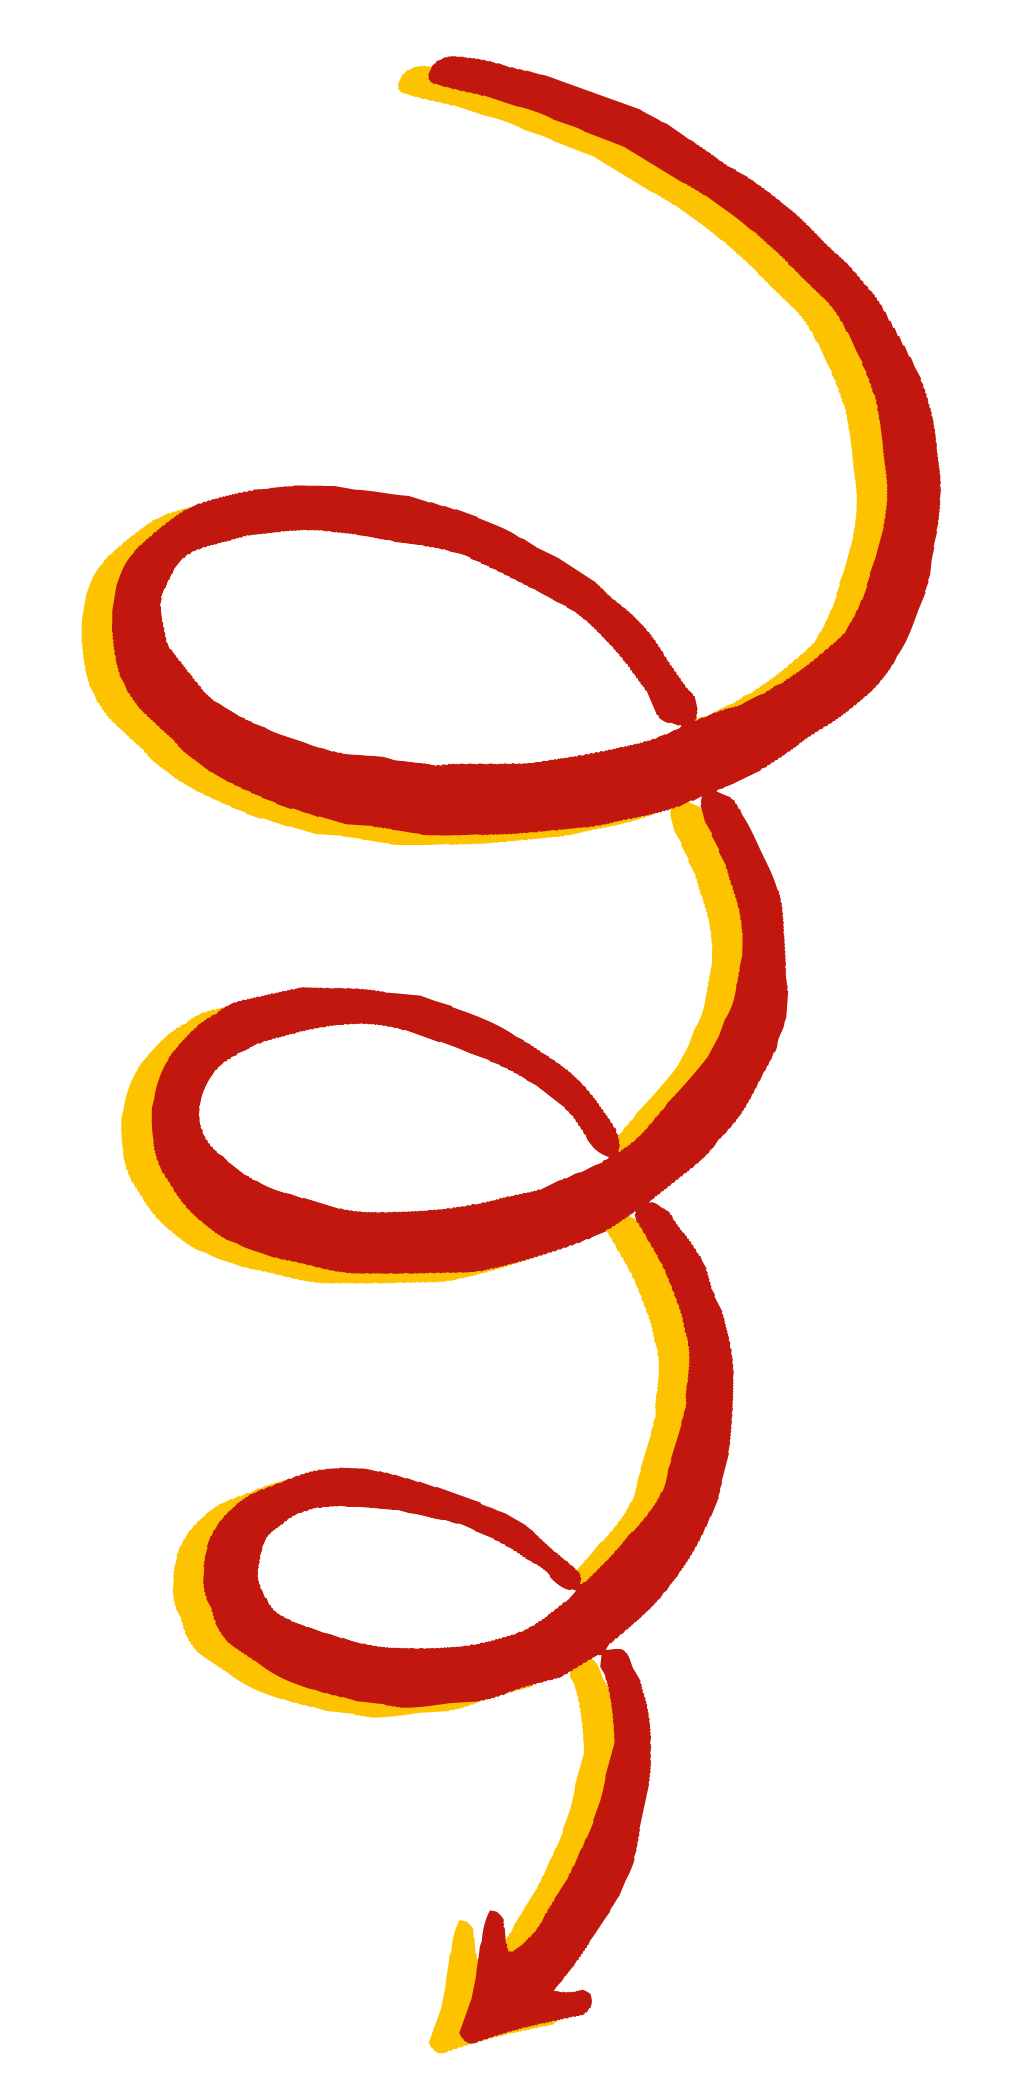 Ein rotgelber Pfeil, der spiralförmig nach unten verläuft.